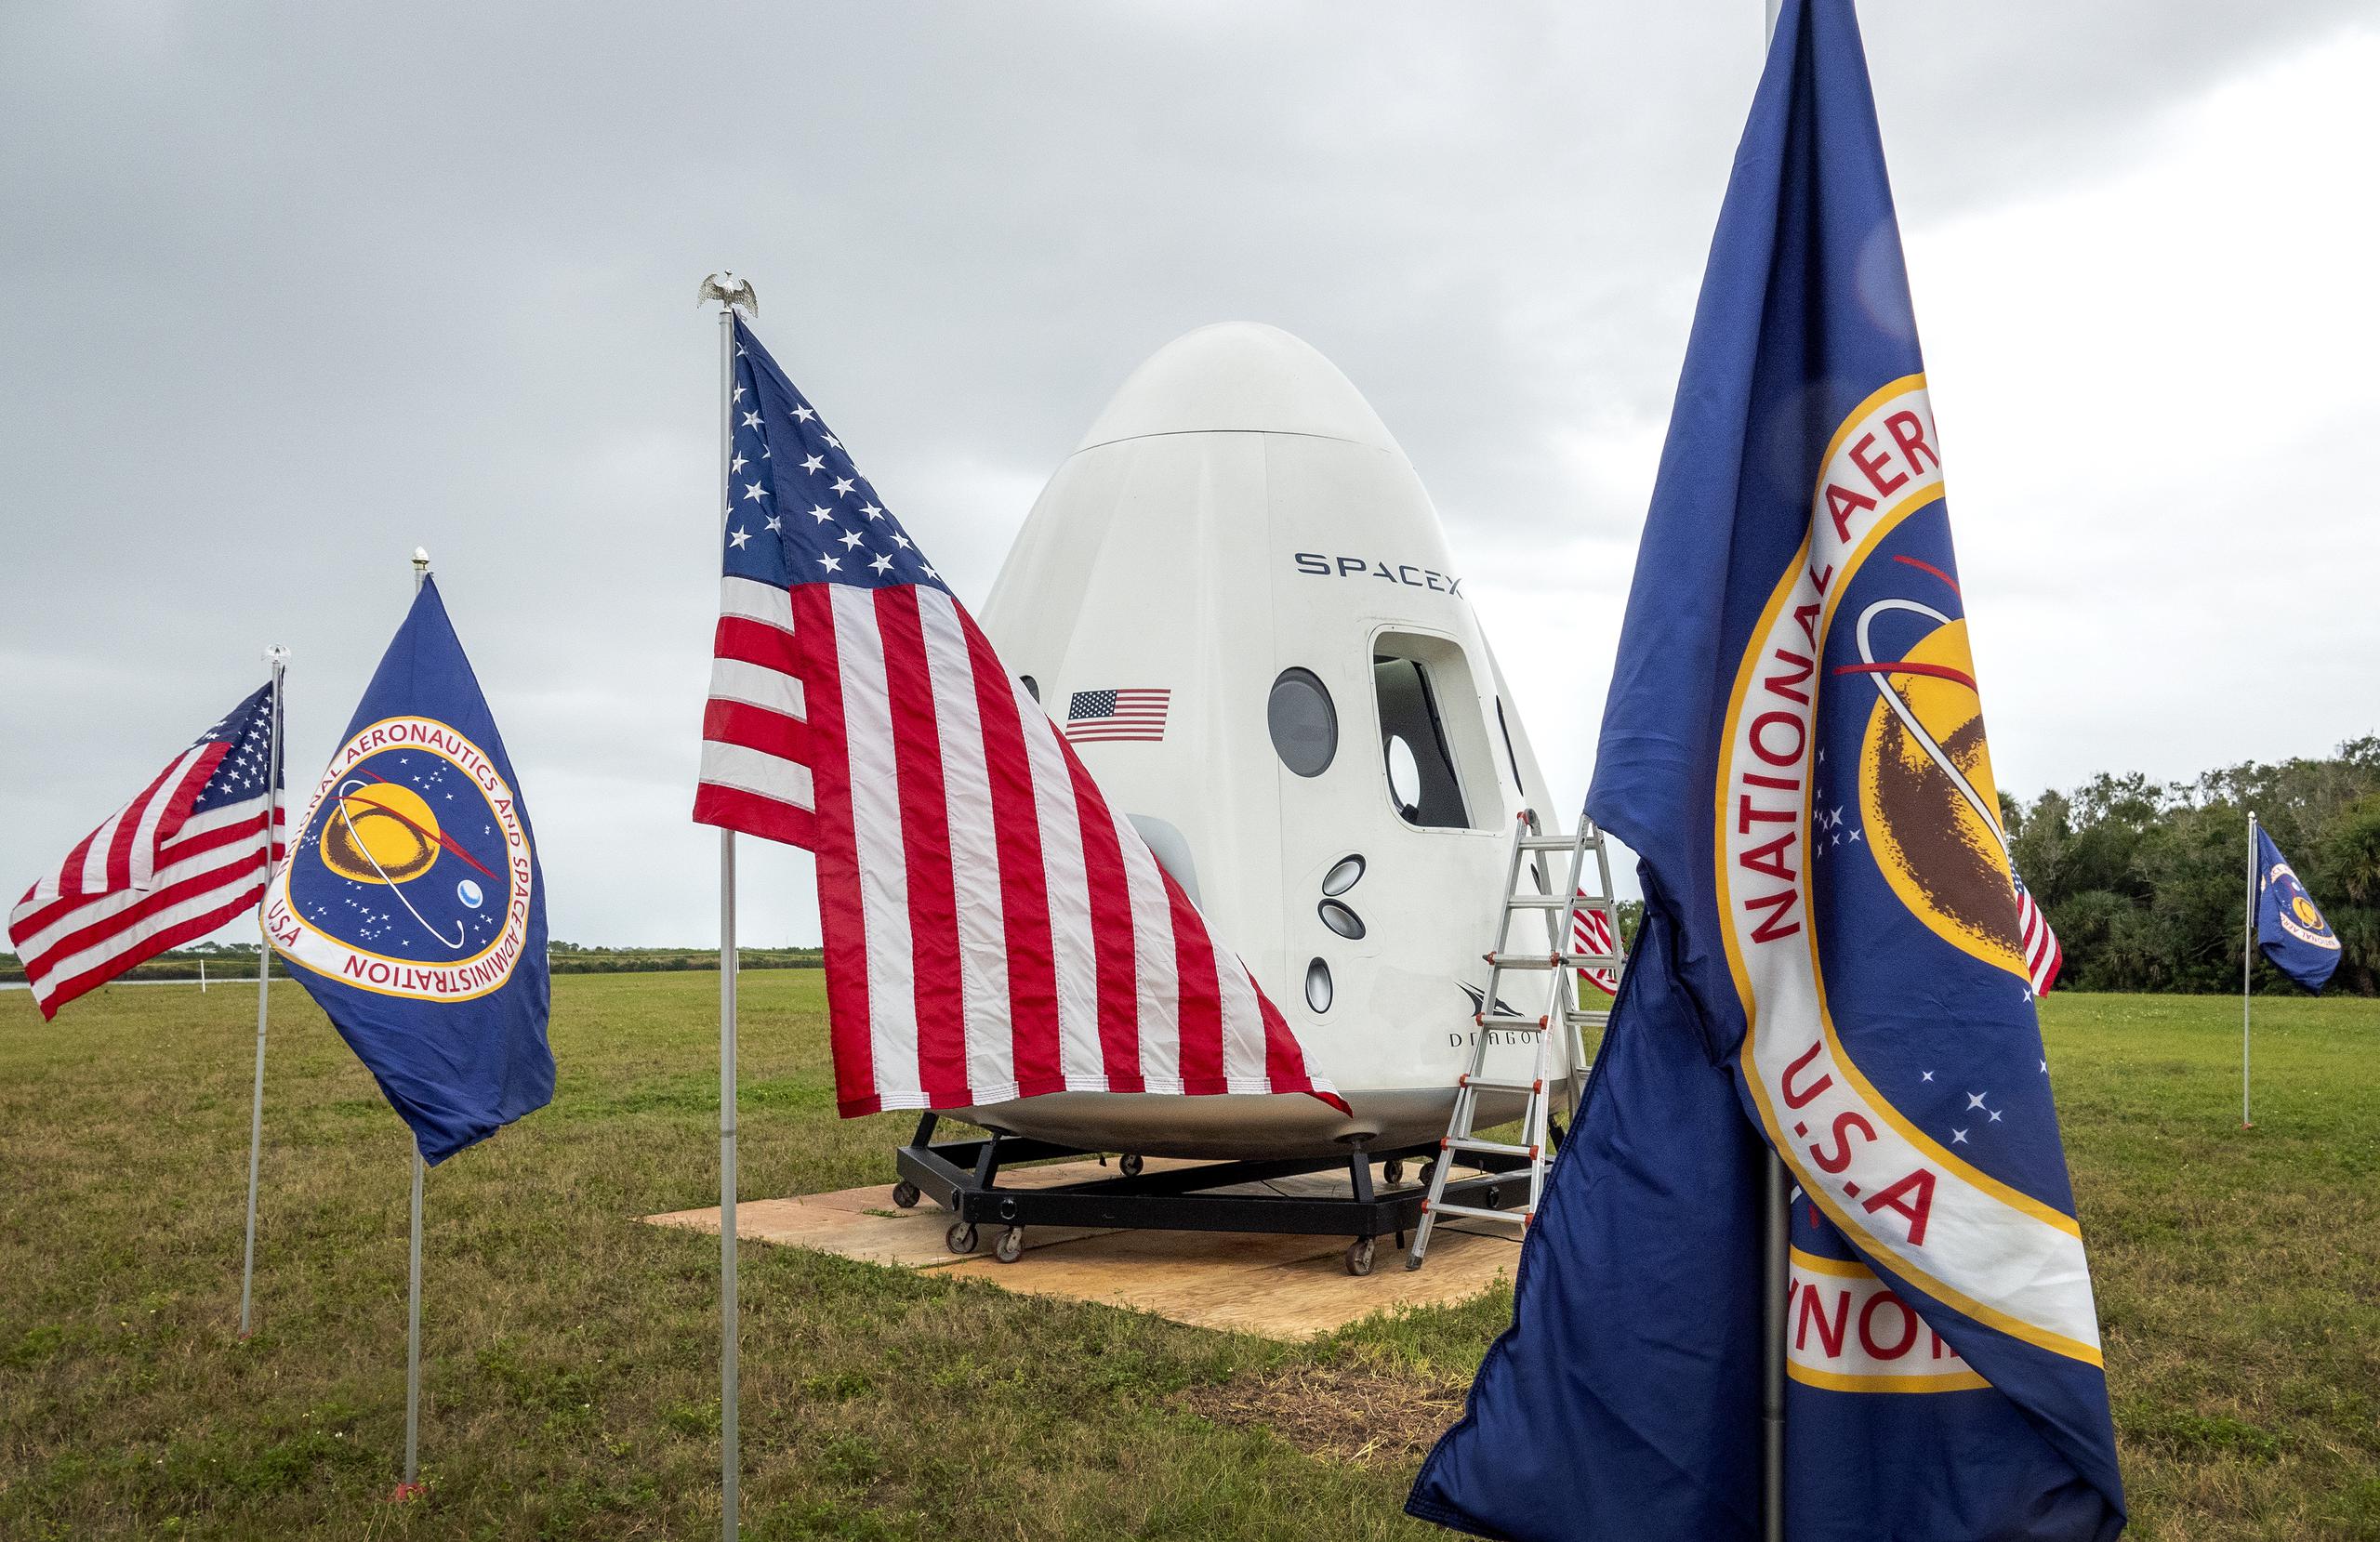 La Dragon despegó desde el Centro Espacial Kennedy el pasado 26 de noviembre, transportando 7,700 libras (3,495 kilos) de material científico y suministros para la tripulación de la estación espacial, y un día después atracó sin incidentes en el llamado laboratorio orbital. EFE/EPA/CRISTOBAL HERRERA-ULASHKEVICH